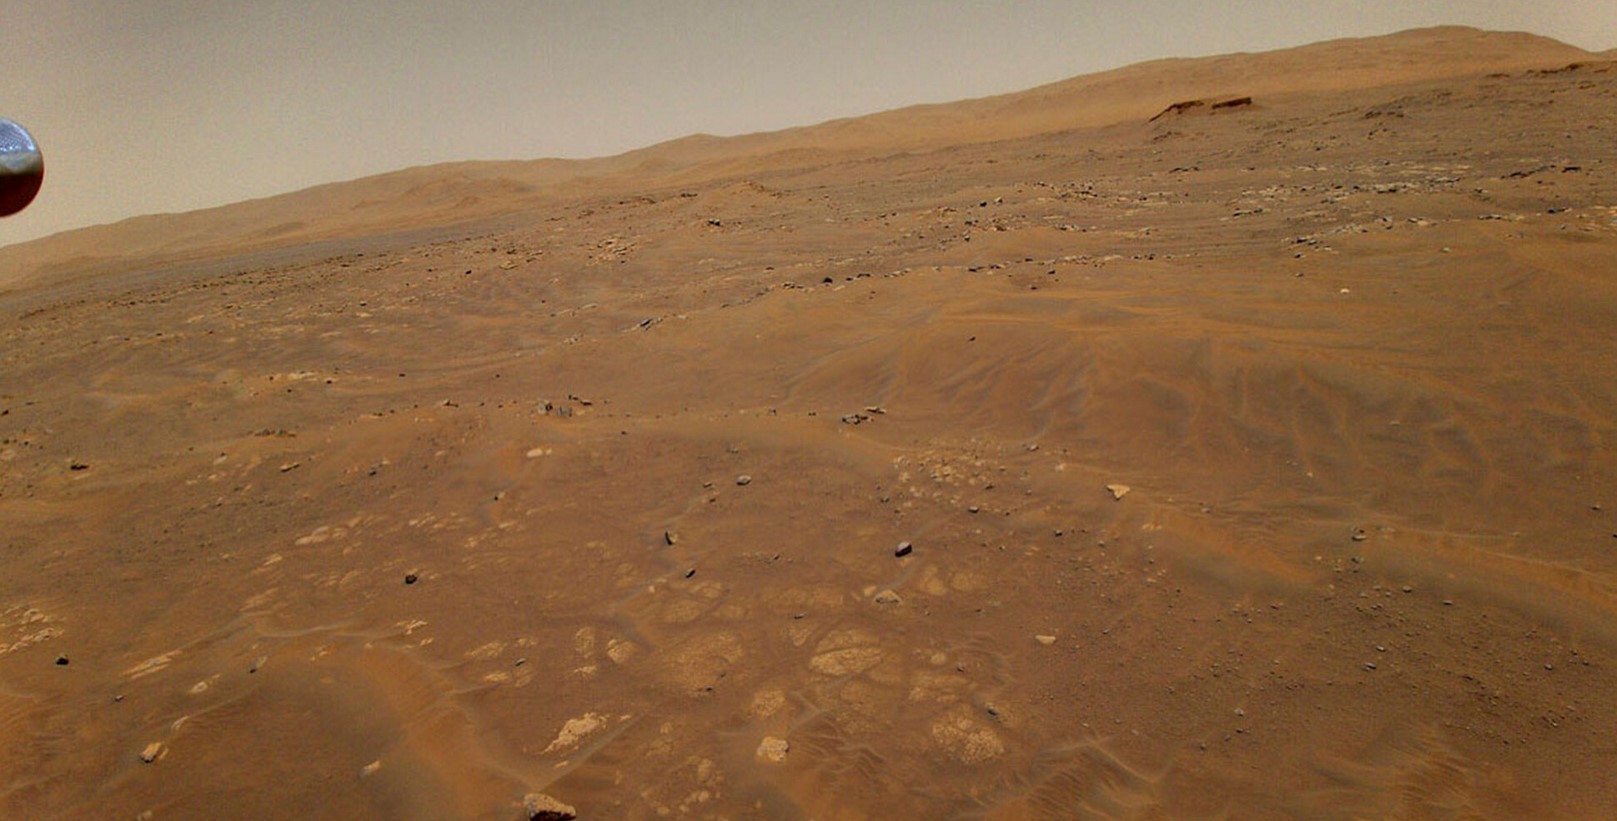 火星の謎は、その異常なレーダー信号が水ではないことが判明するにつれて深まります。赤い惑星で何が醸造されているのでしょうか。 1